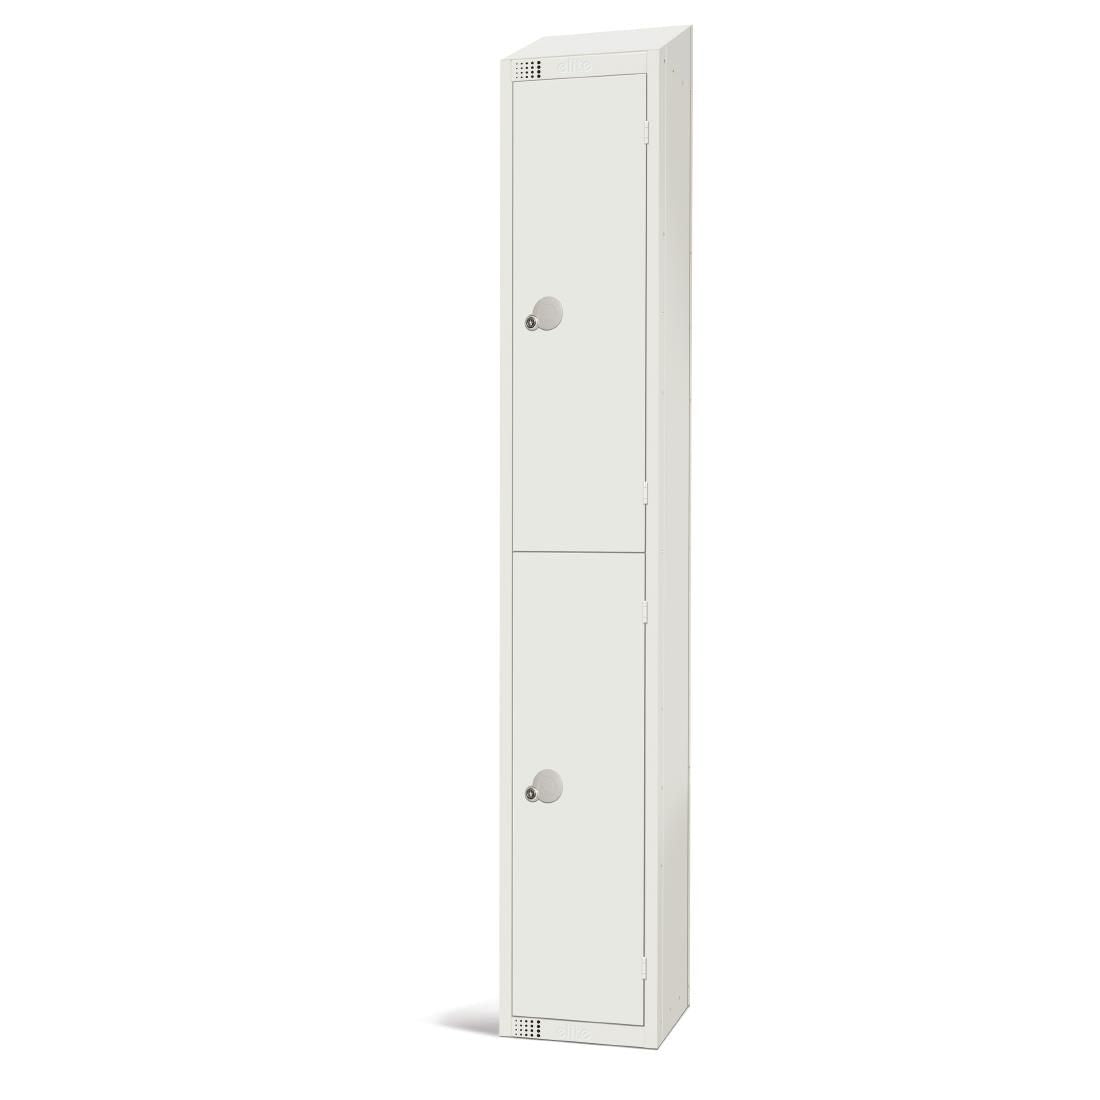 Elite Double Door Manual Combination Locker with Sloping Top JD Catering Equipment Solutions Ltd